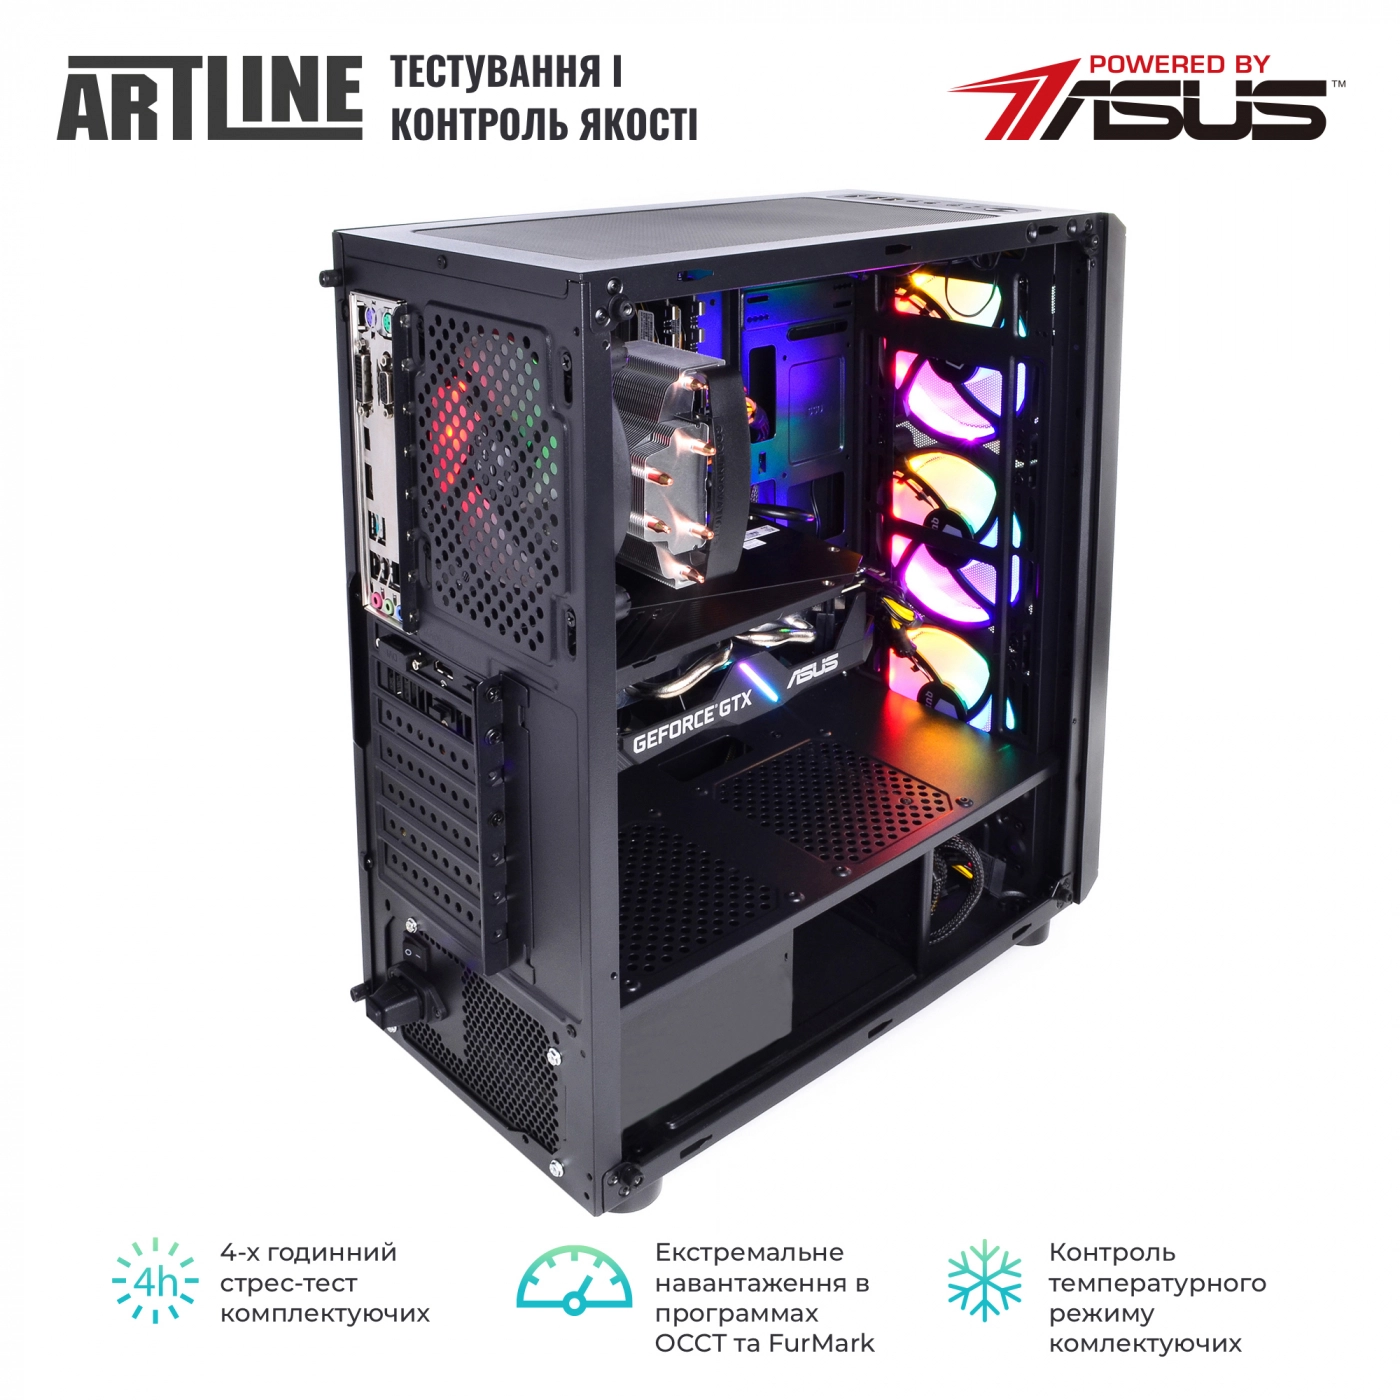 Купить Компьютер ARTLINE Gaming X84v17 - фото 8